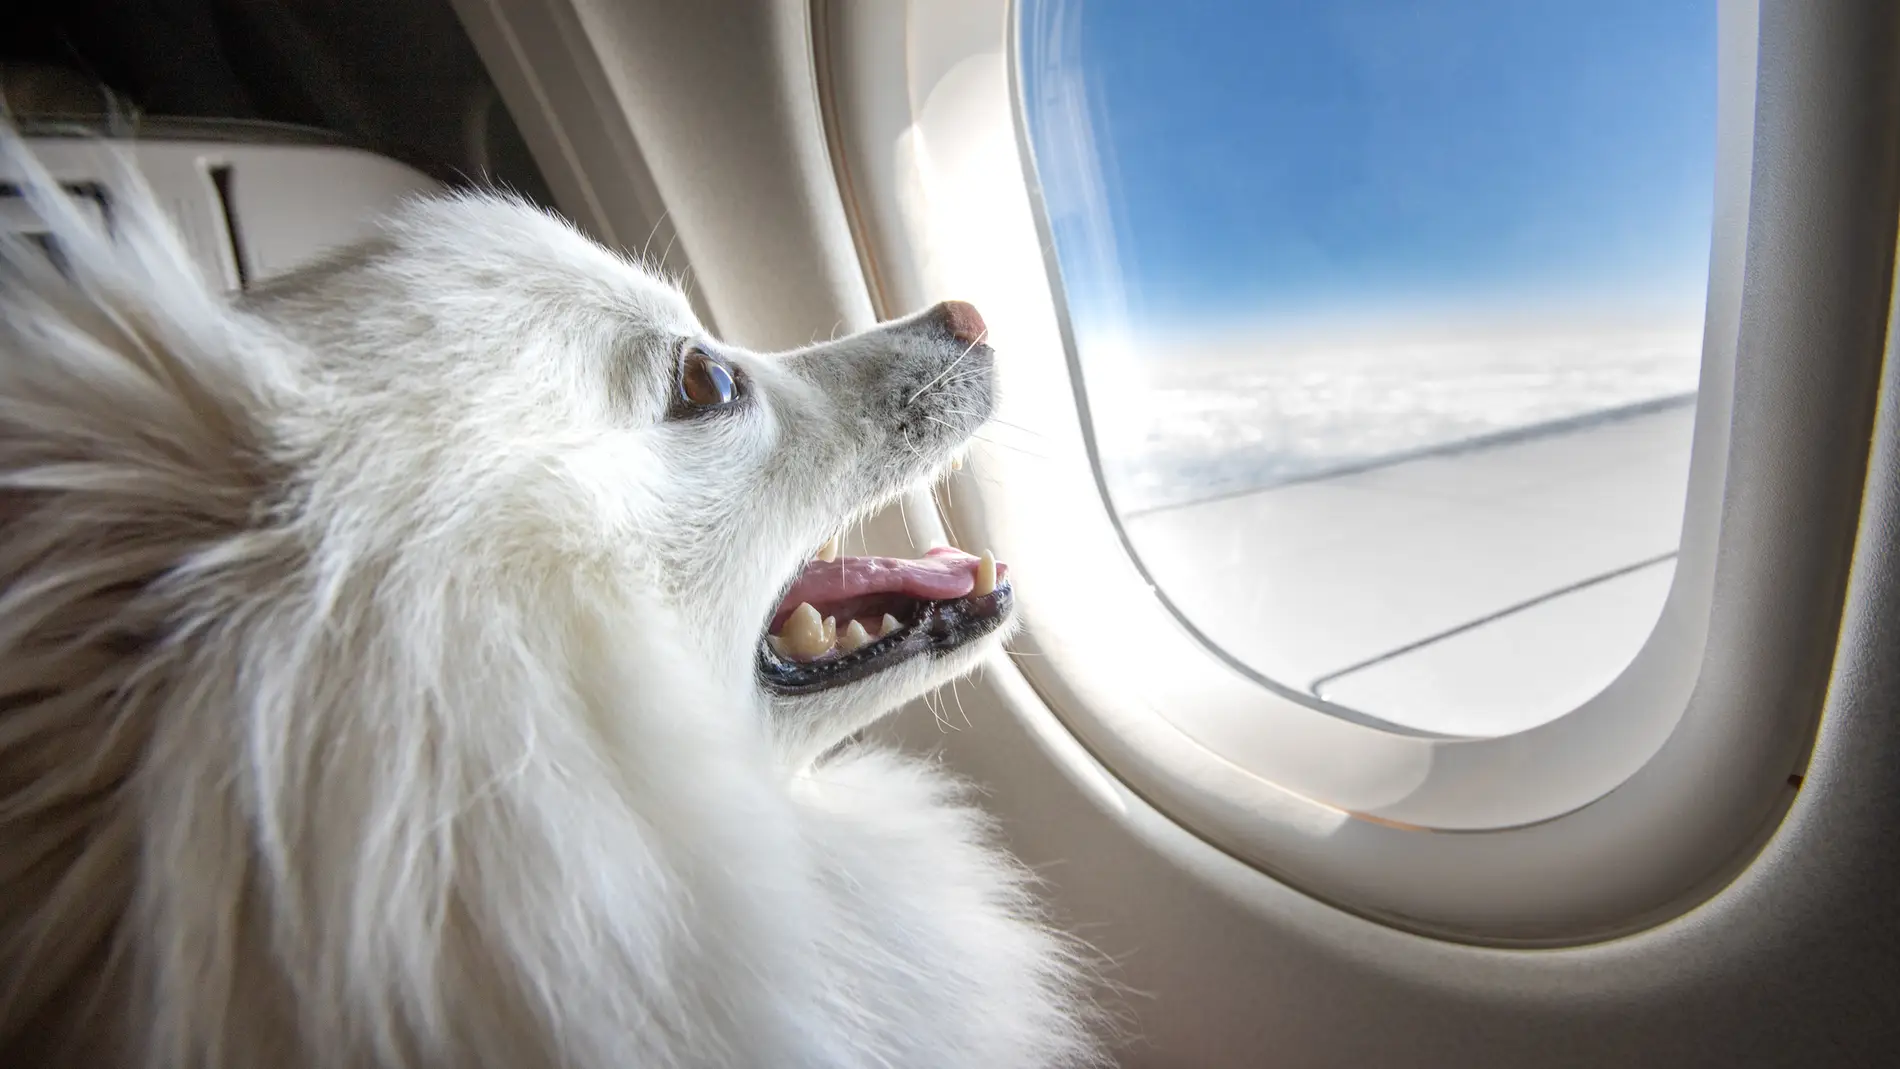 Requisitos las aerolíneas para viajar en avión con mascotas